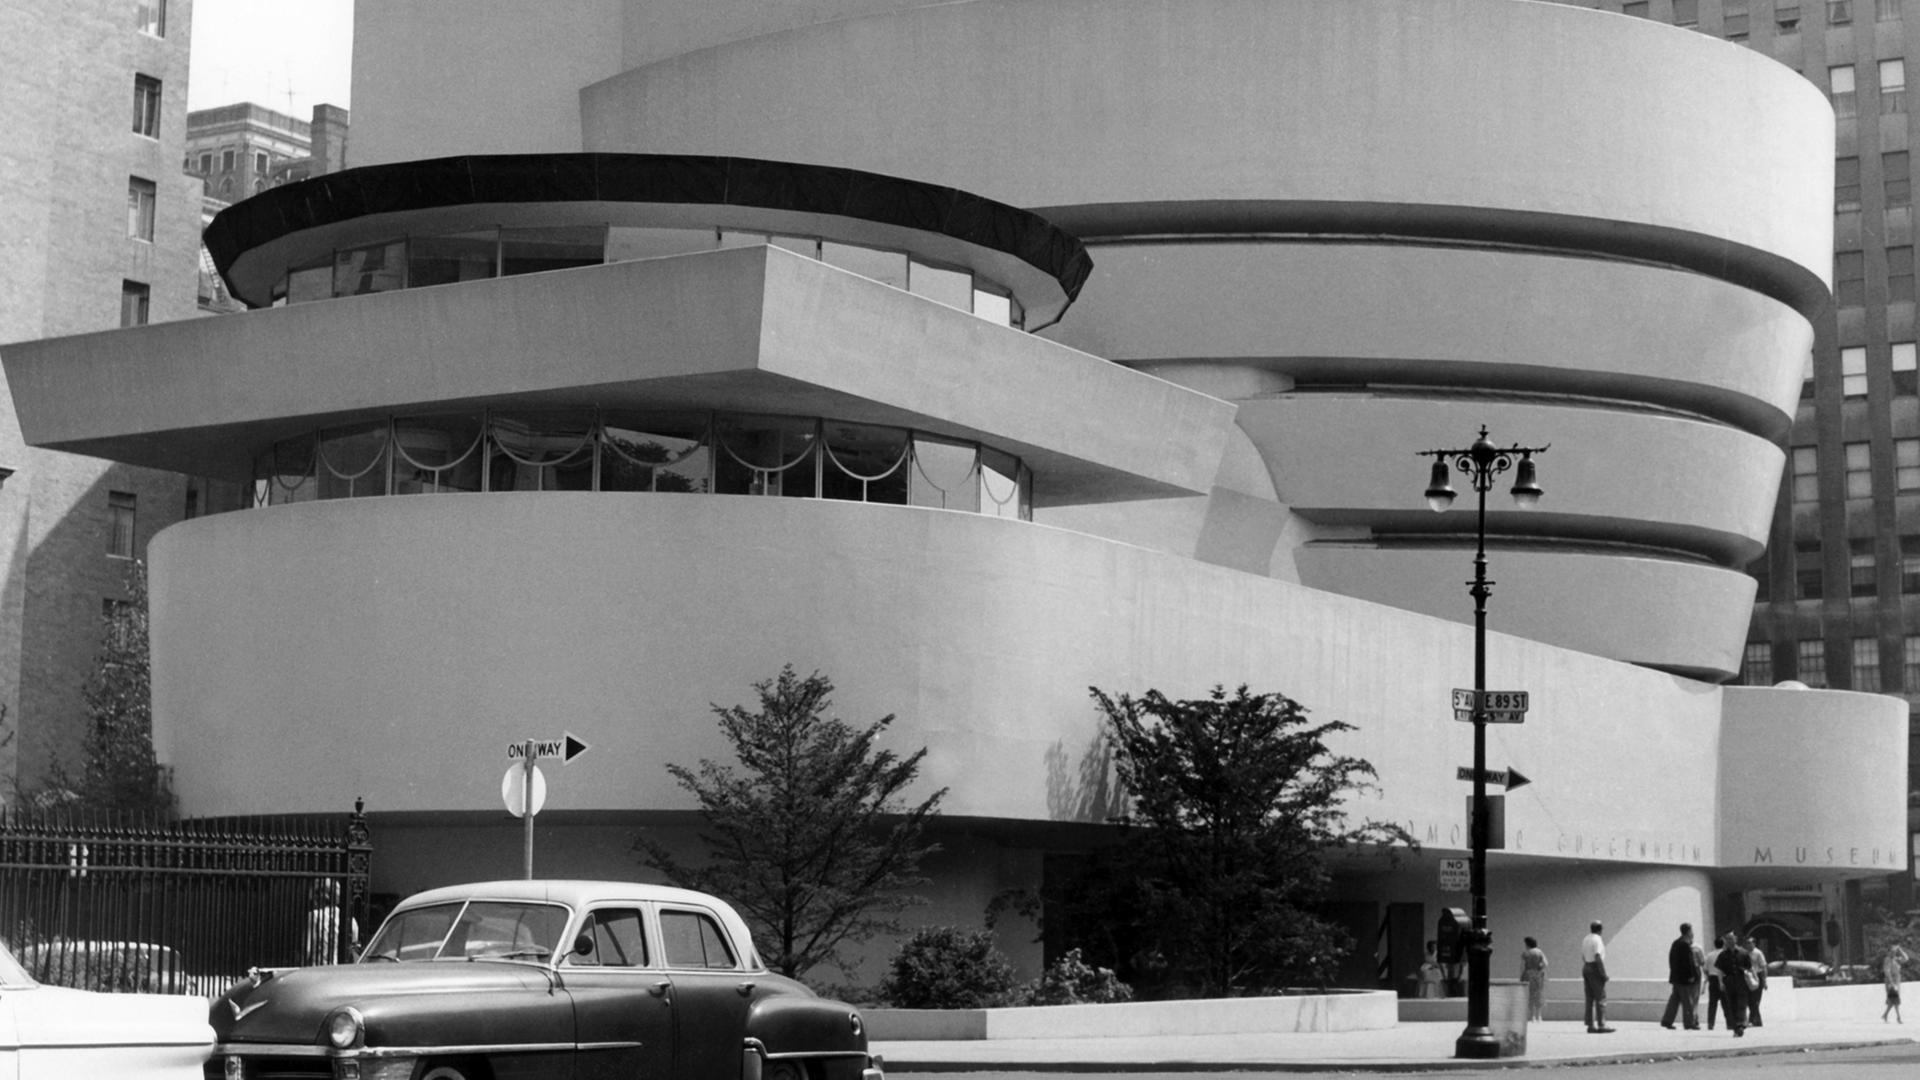 Blick auf das Guggenheim-Museum in New York am 08.08.1959.